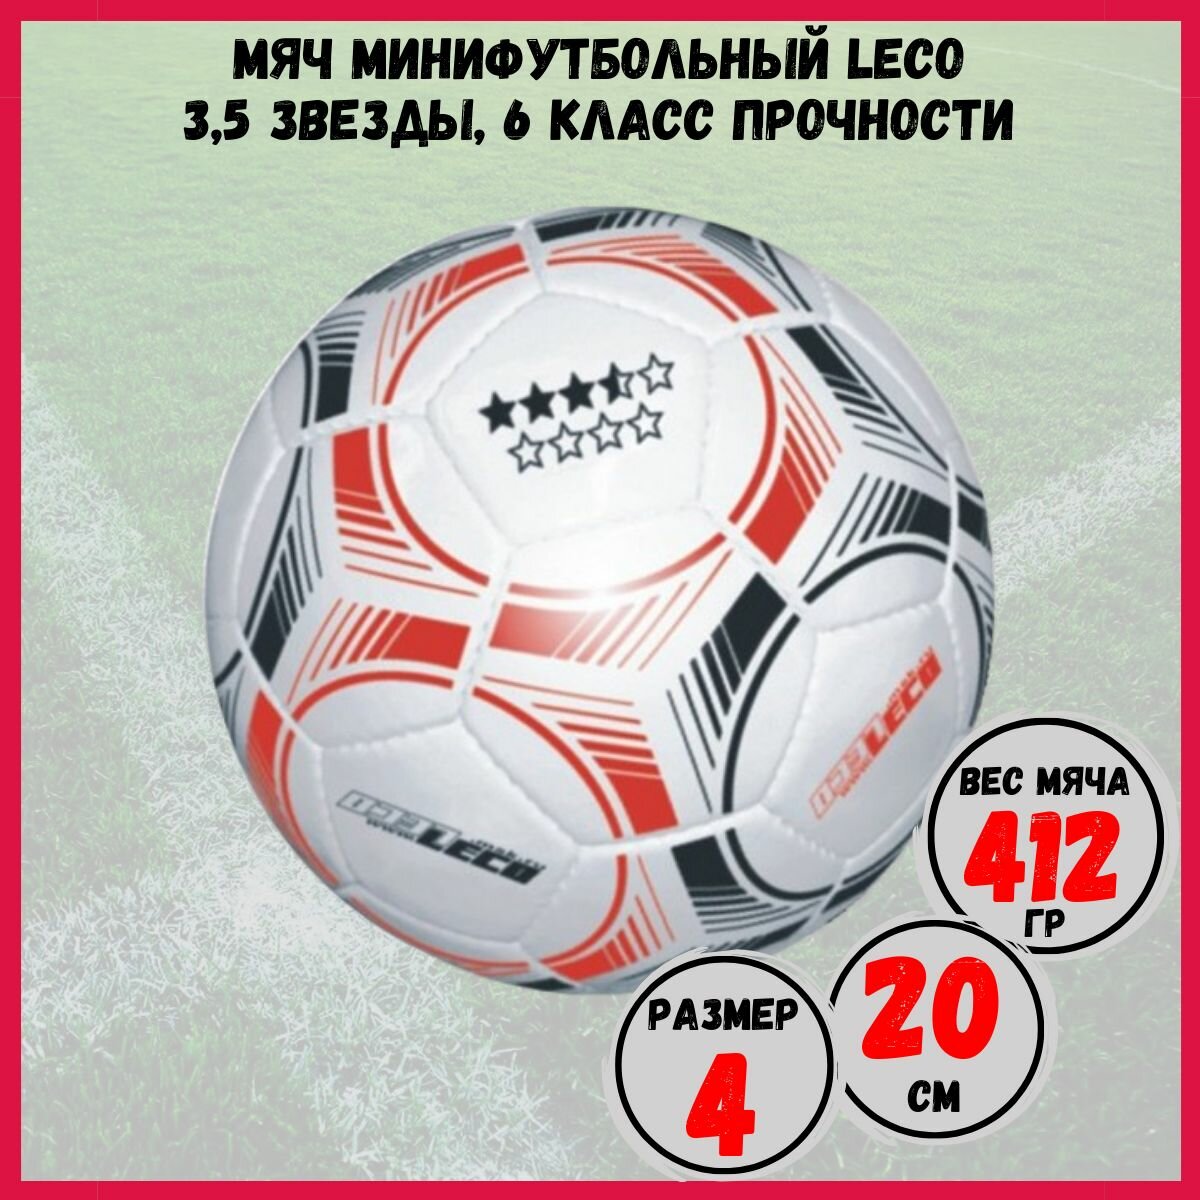 Мяч минифутбольный Leco 3,5 звезды, 6 класс прочности